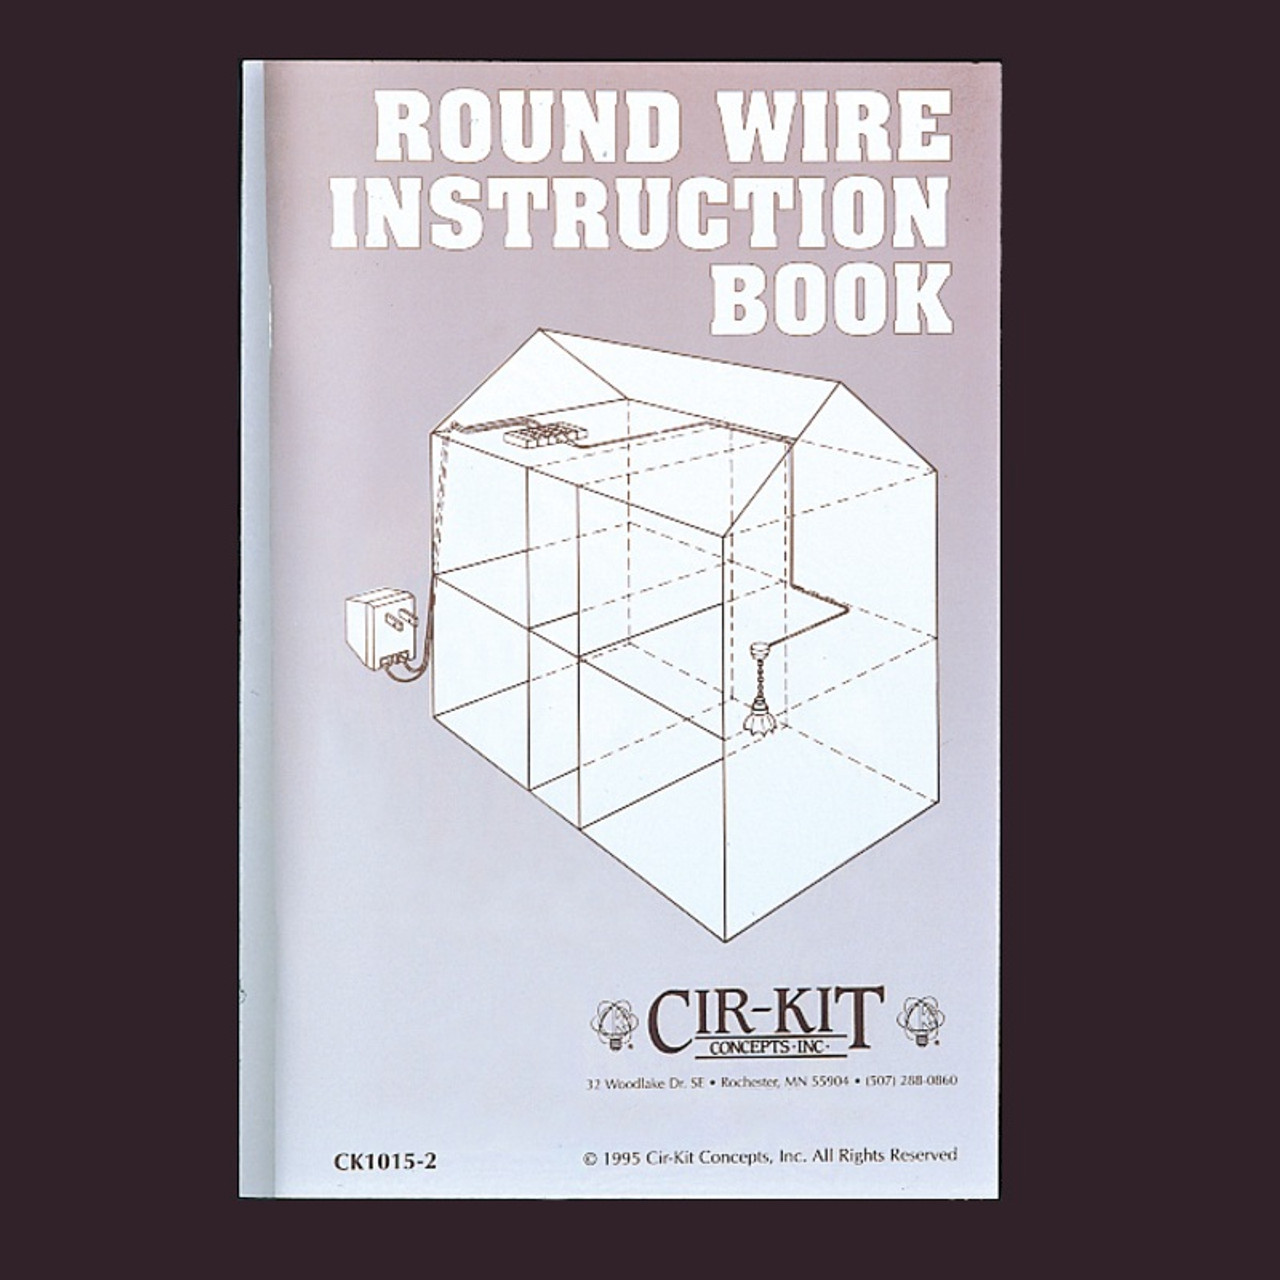 Round Wire Instruction Book (CK1015-2)